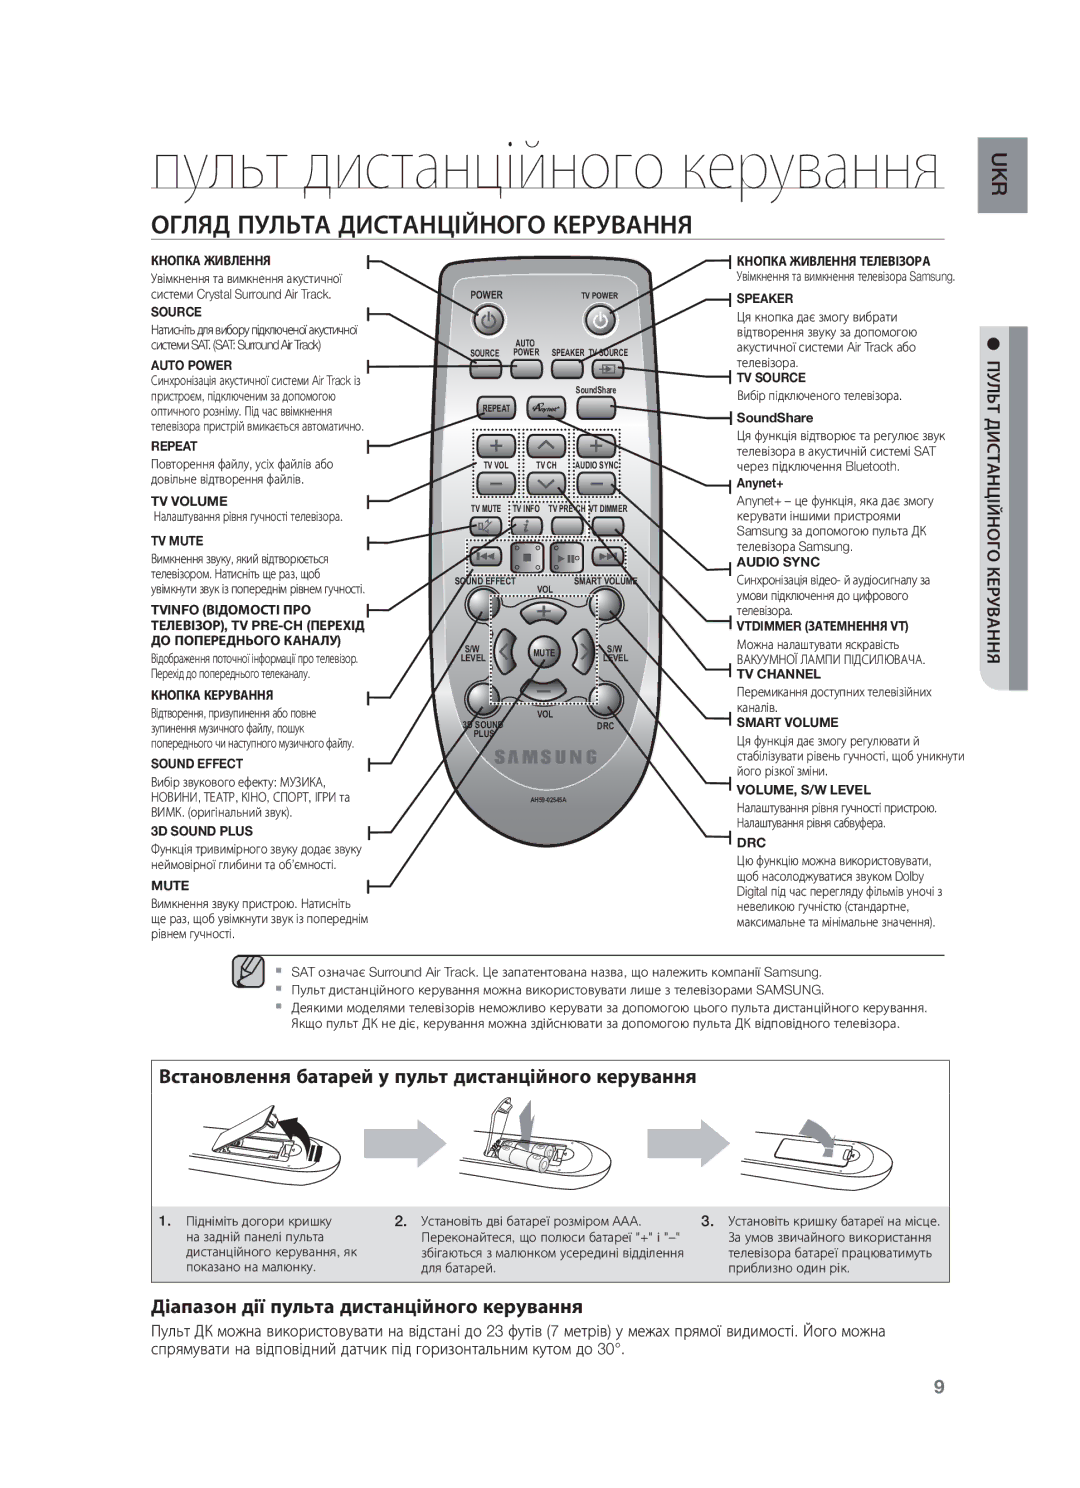 Samsung HW-F750/RU manual Огляд Пульта Дистанційного Керування, Пульт Дистанційного Керування 